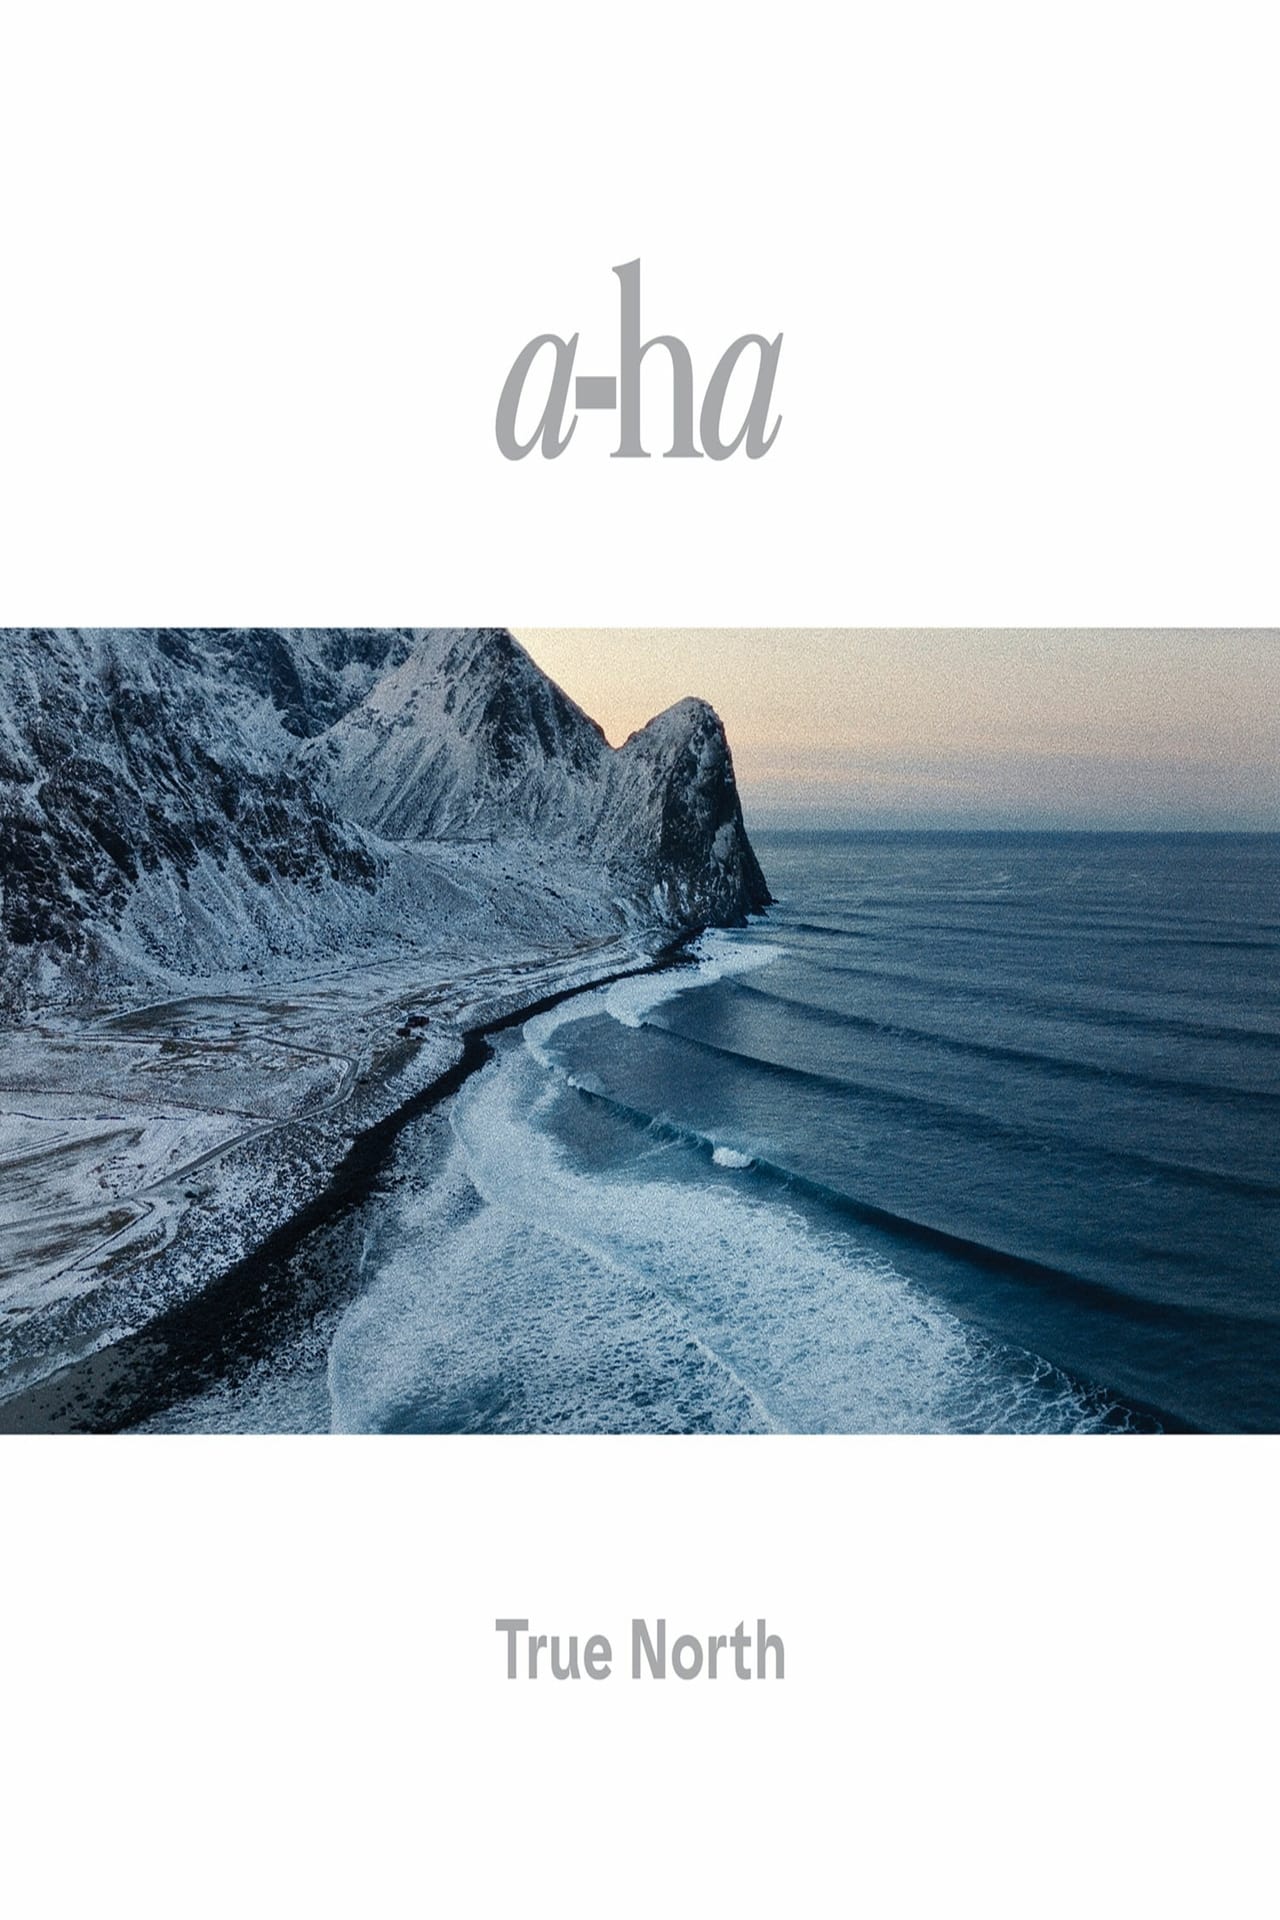 a-ha: TRUE NORTH